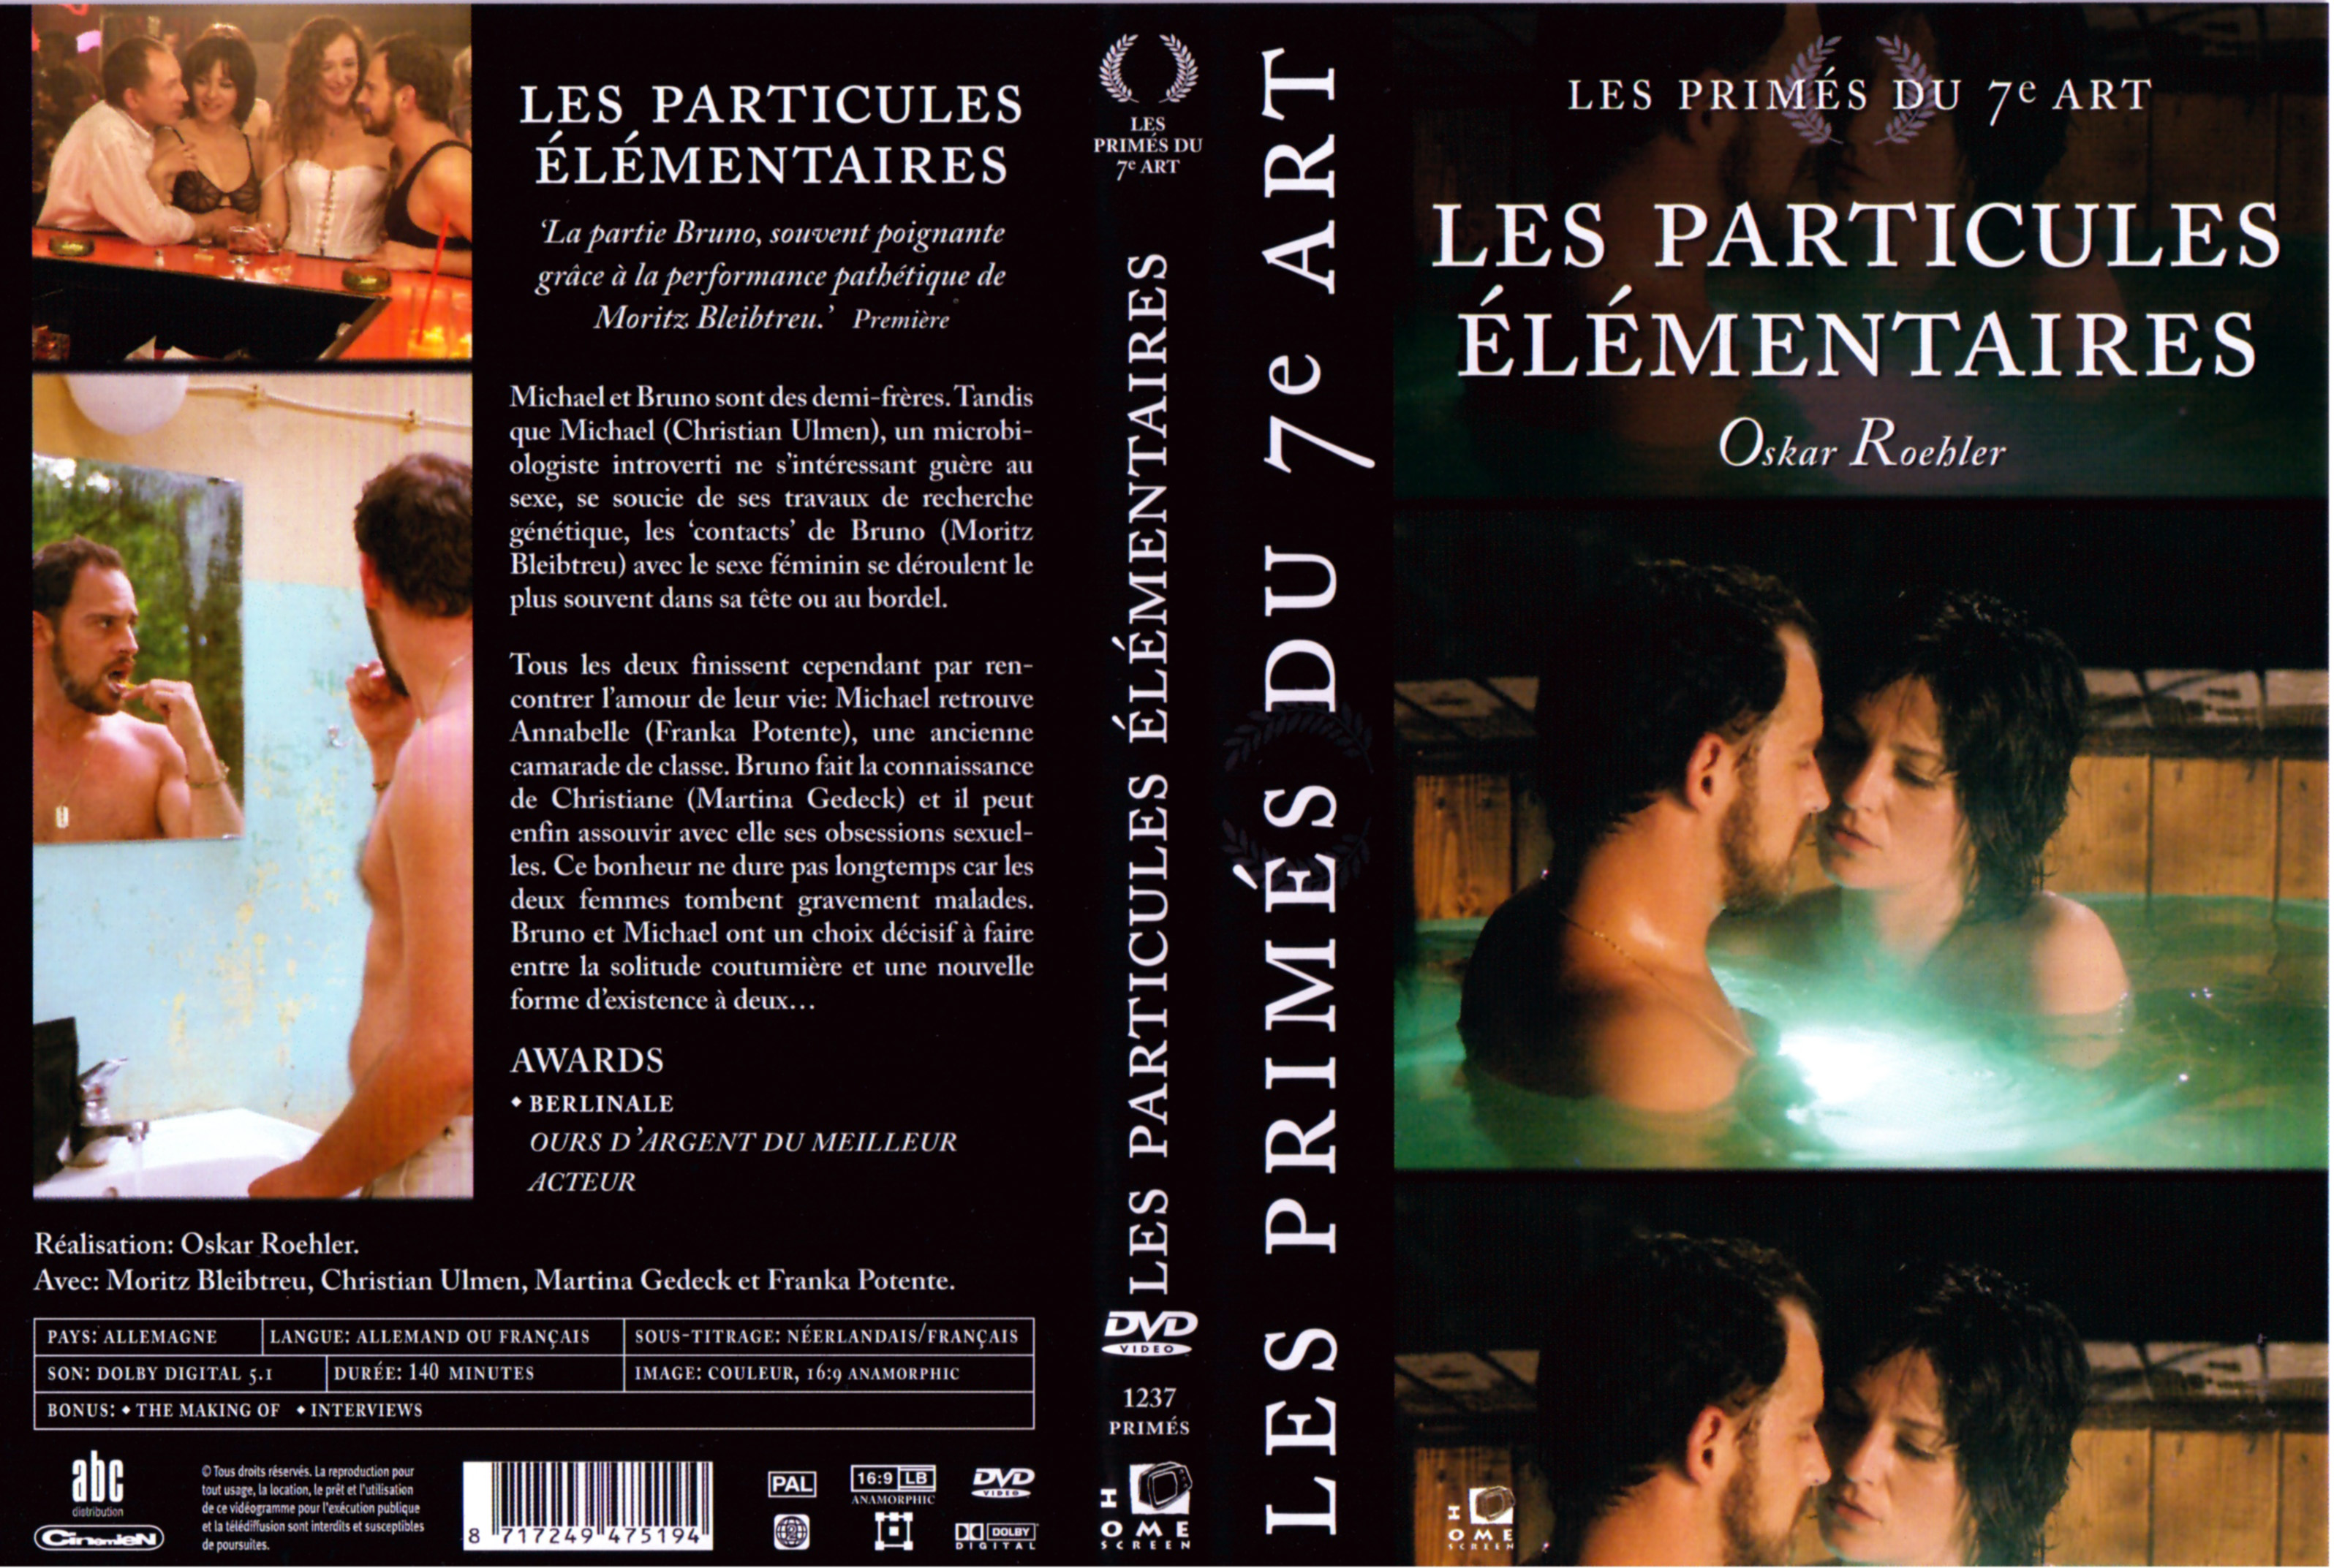 Jaquette DVD Les particules lmentaires v2